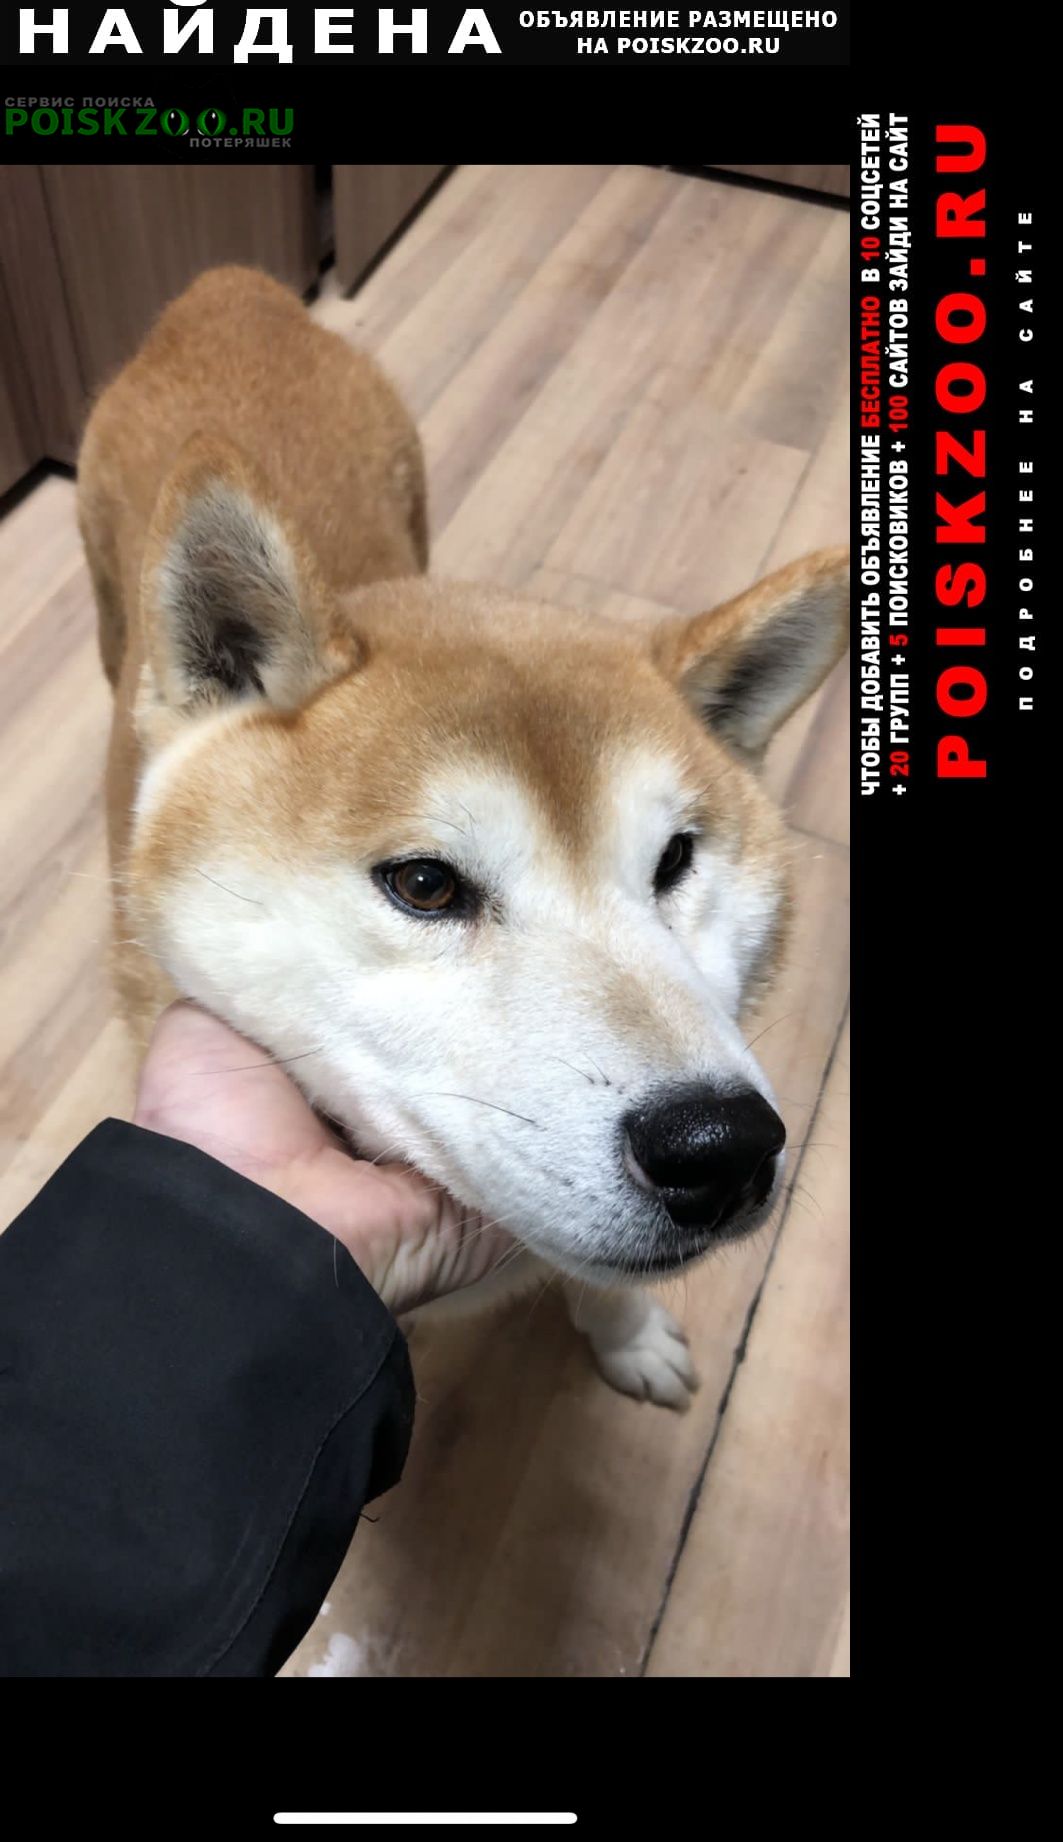 Найдена собака кобель сиба ину кобель молодой года полтора Москва